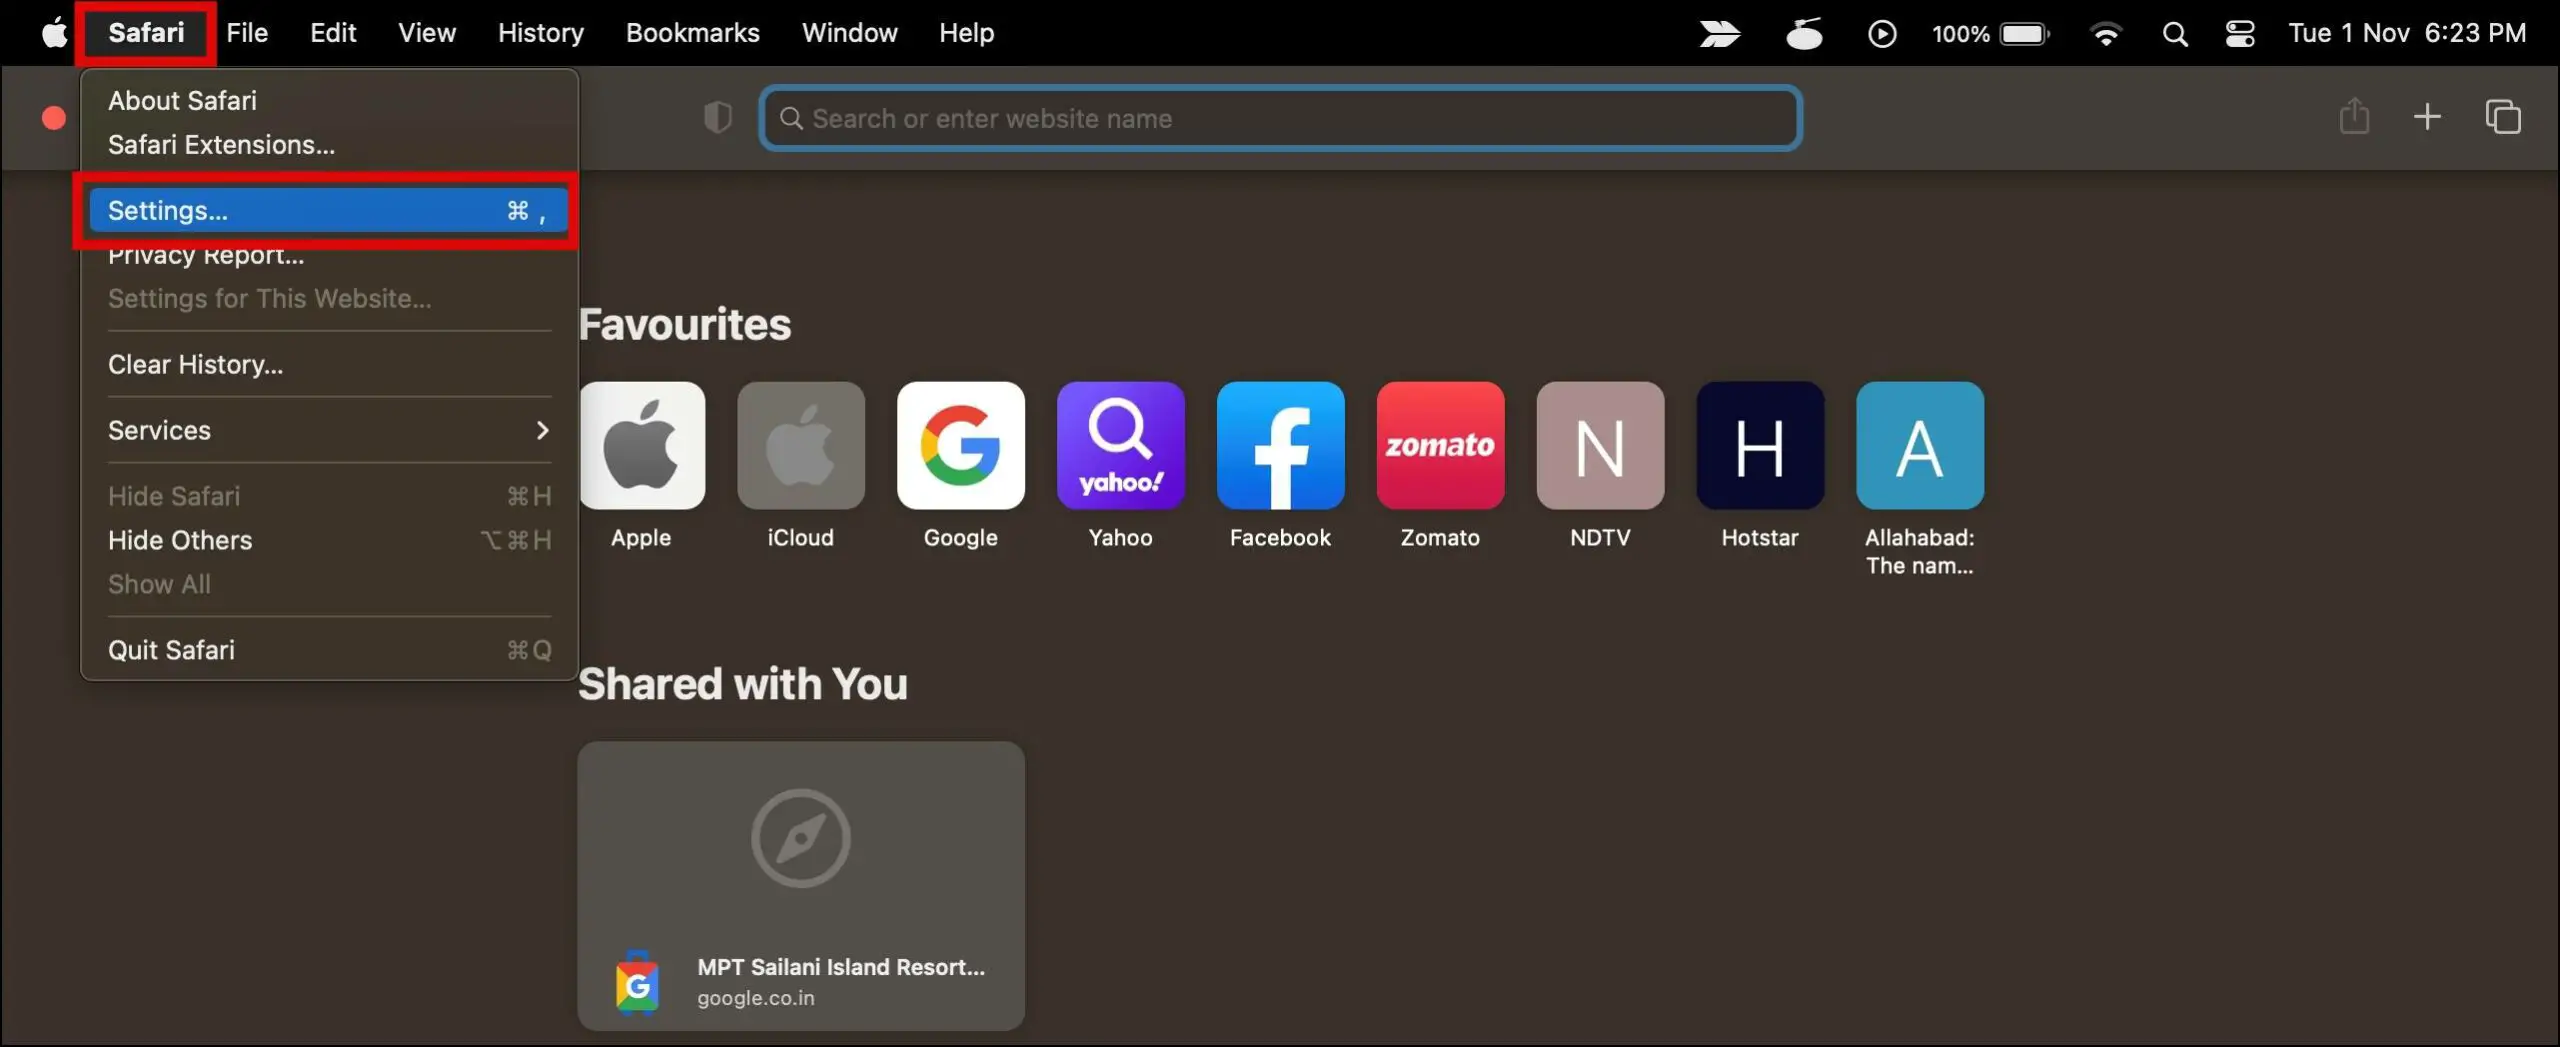 Safari Browser on Mac